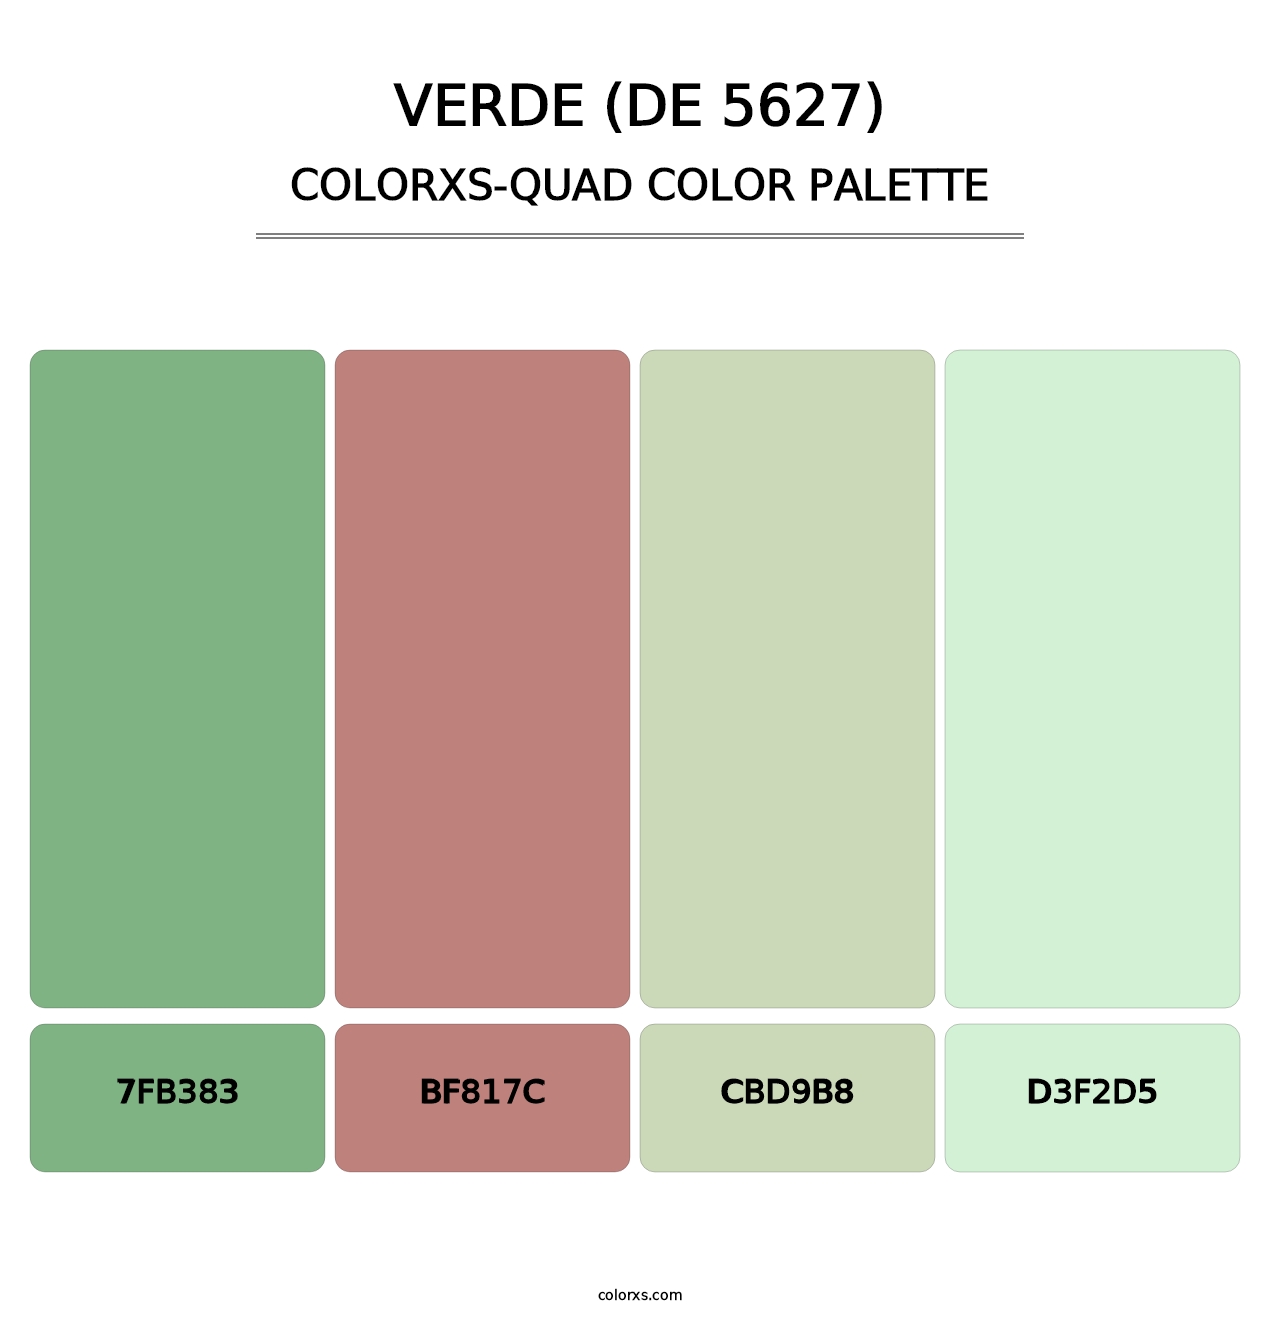 Verde (DE 5627) - Colorxs Quad Palette